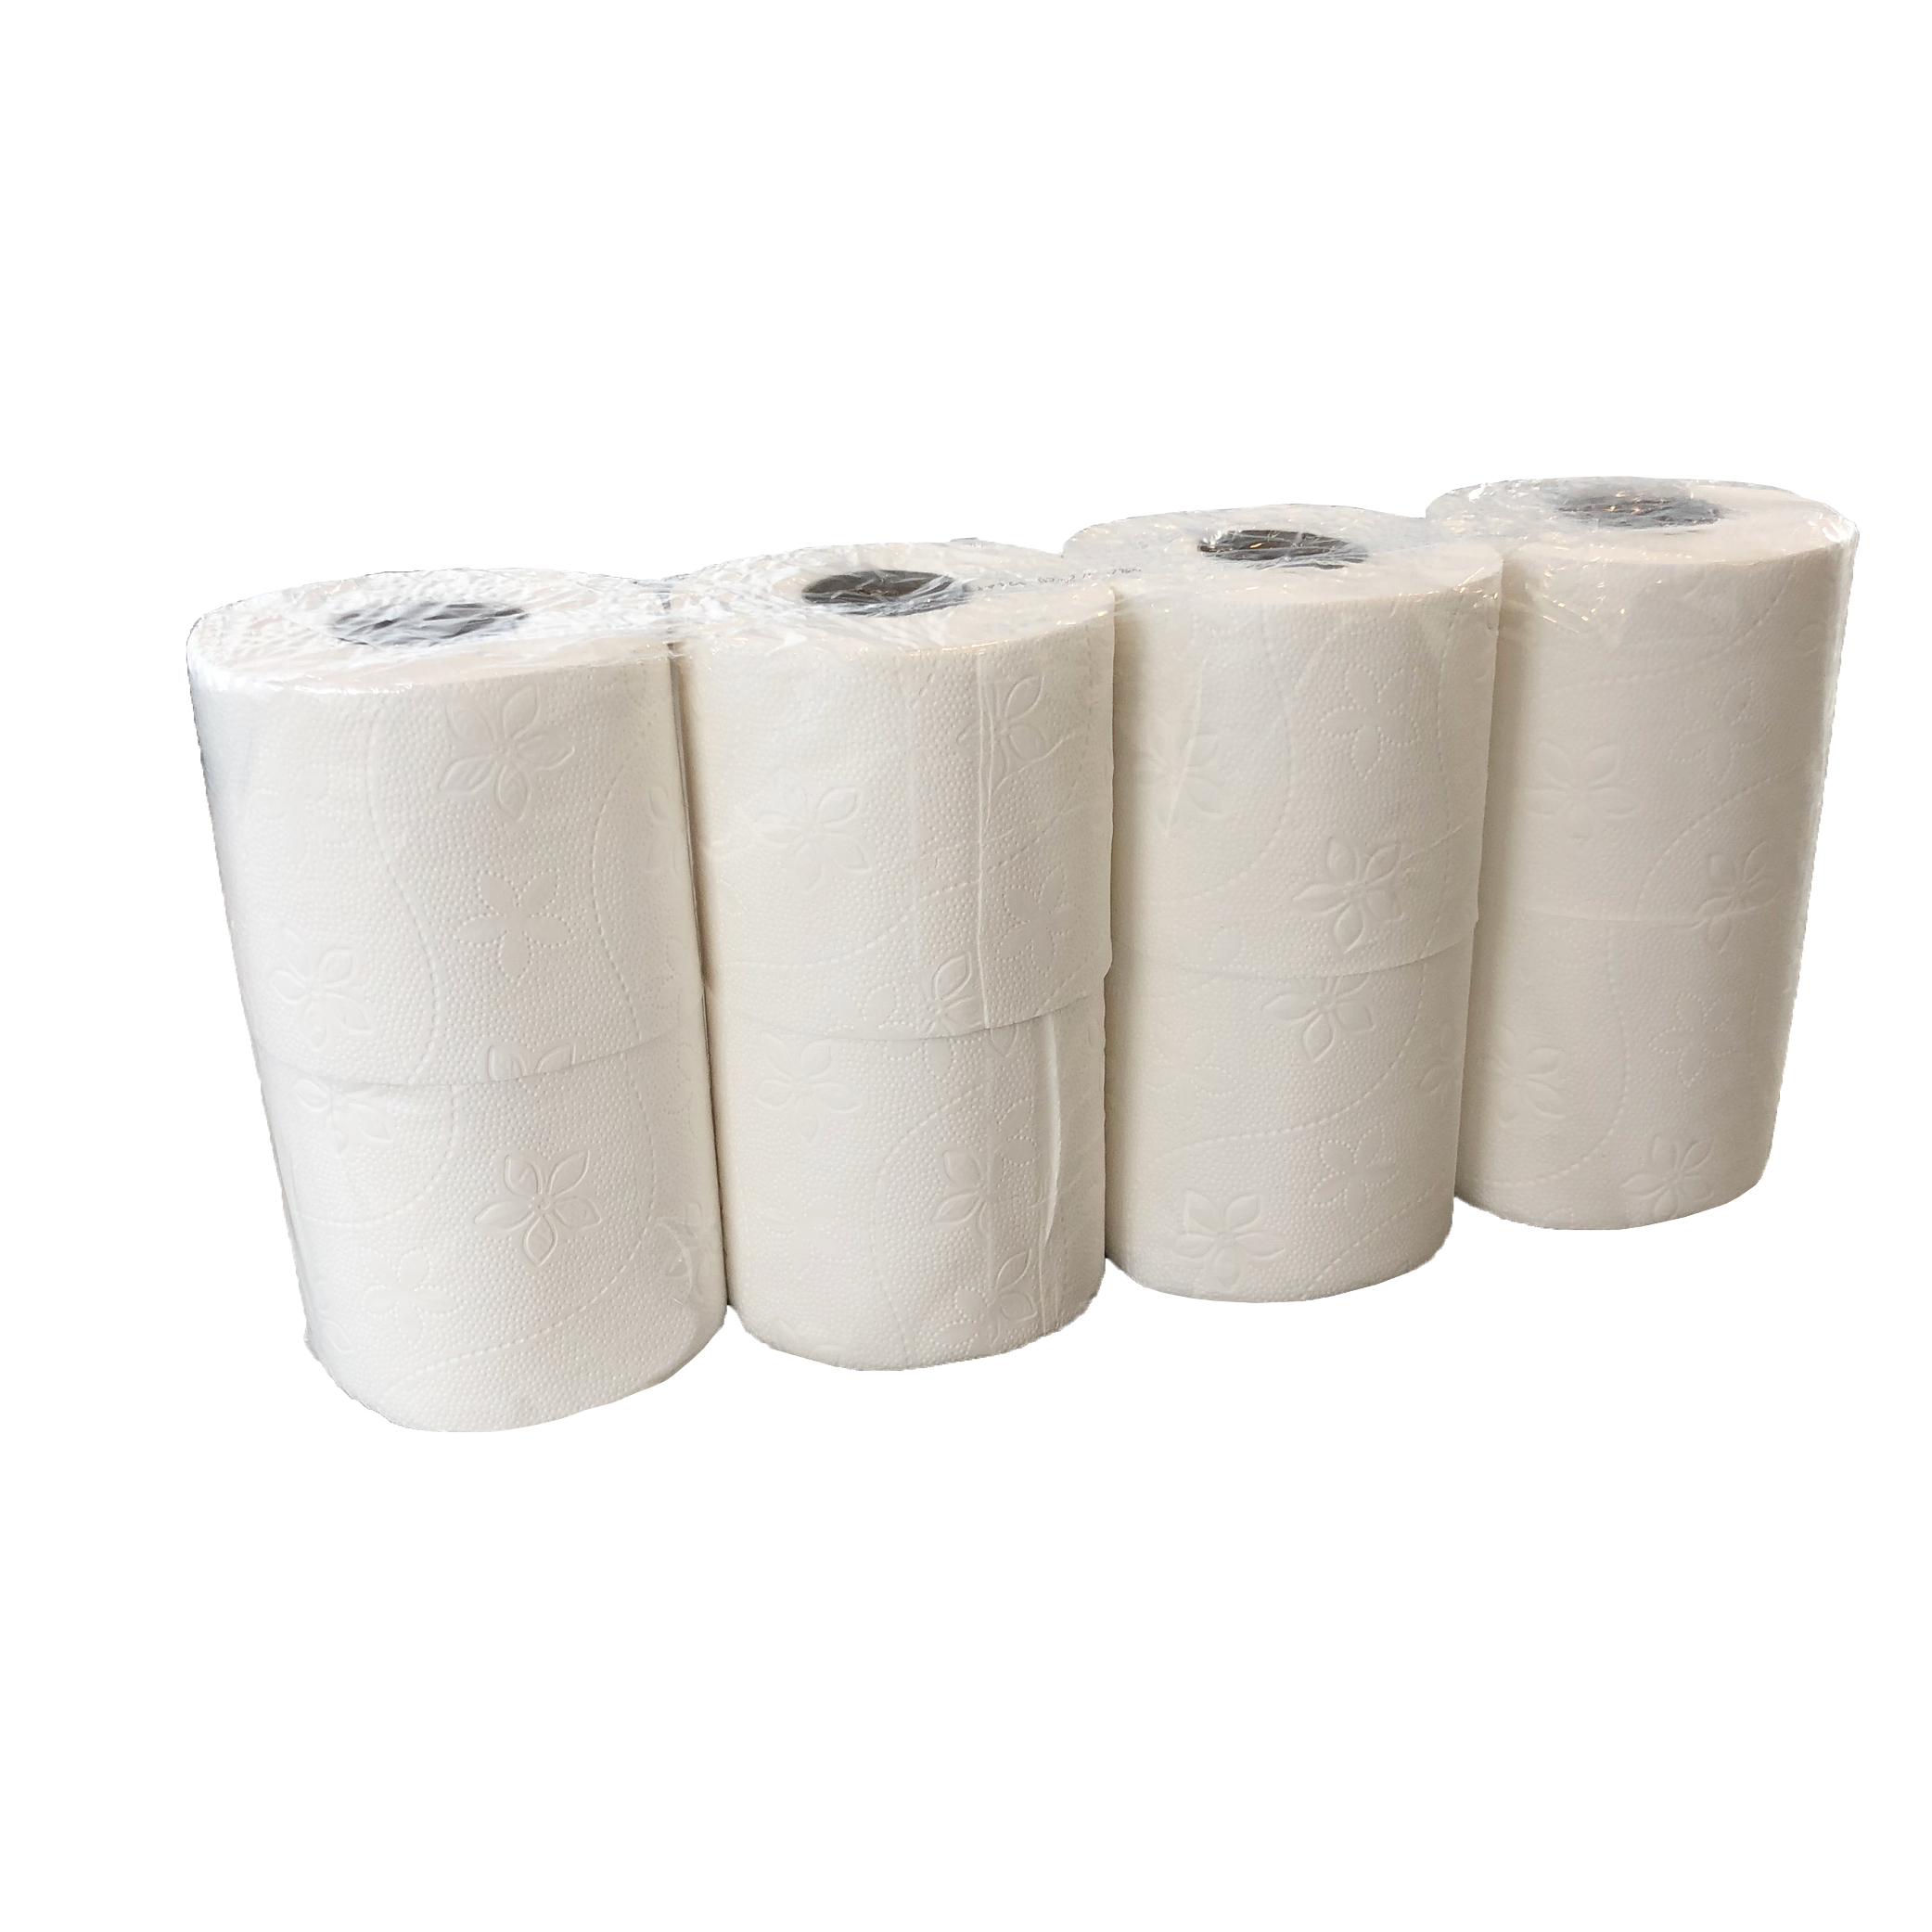 Toiletpapier, extra zacht wc papier, 3 laags